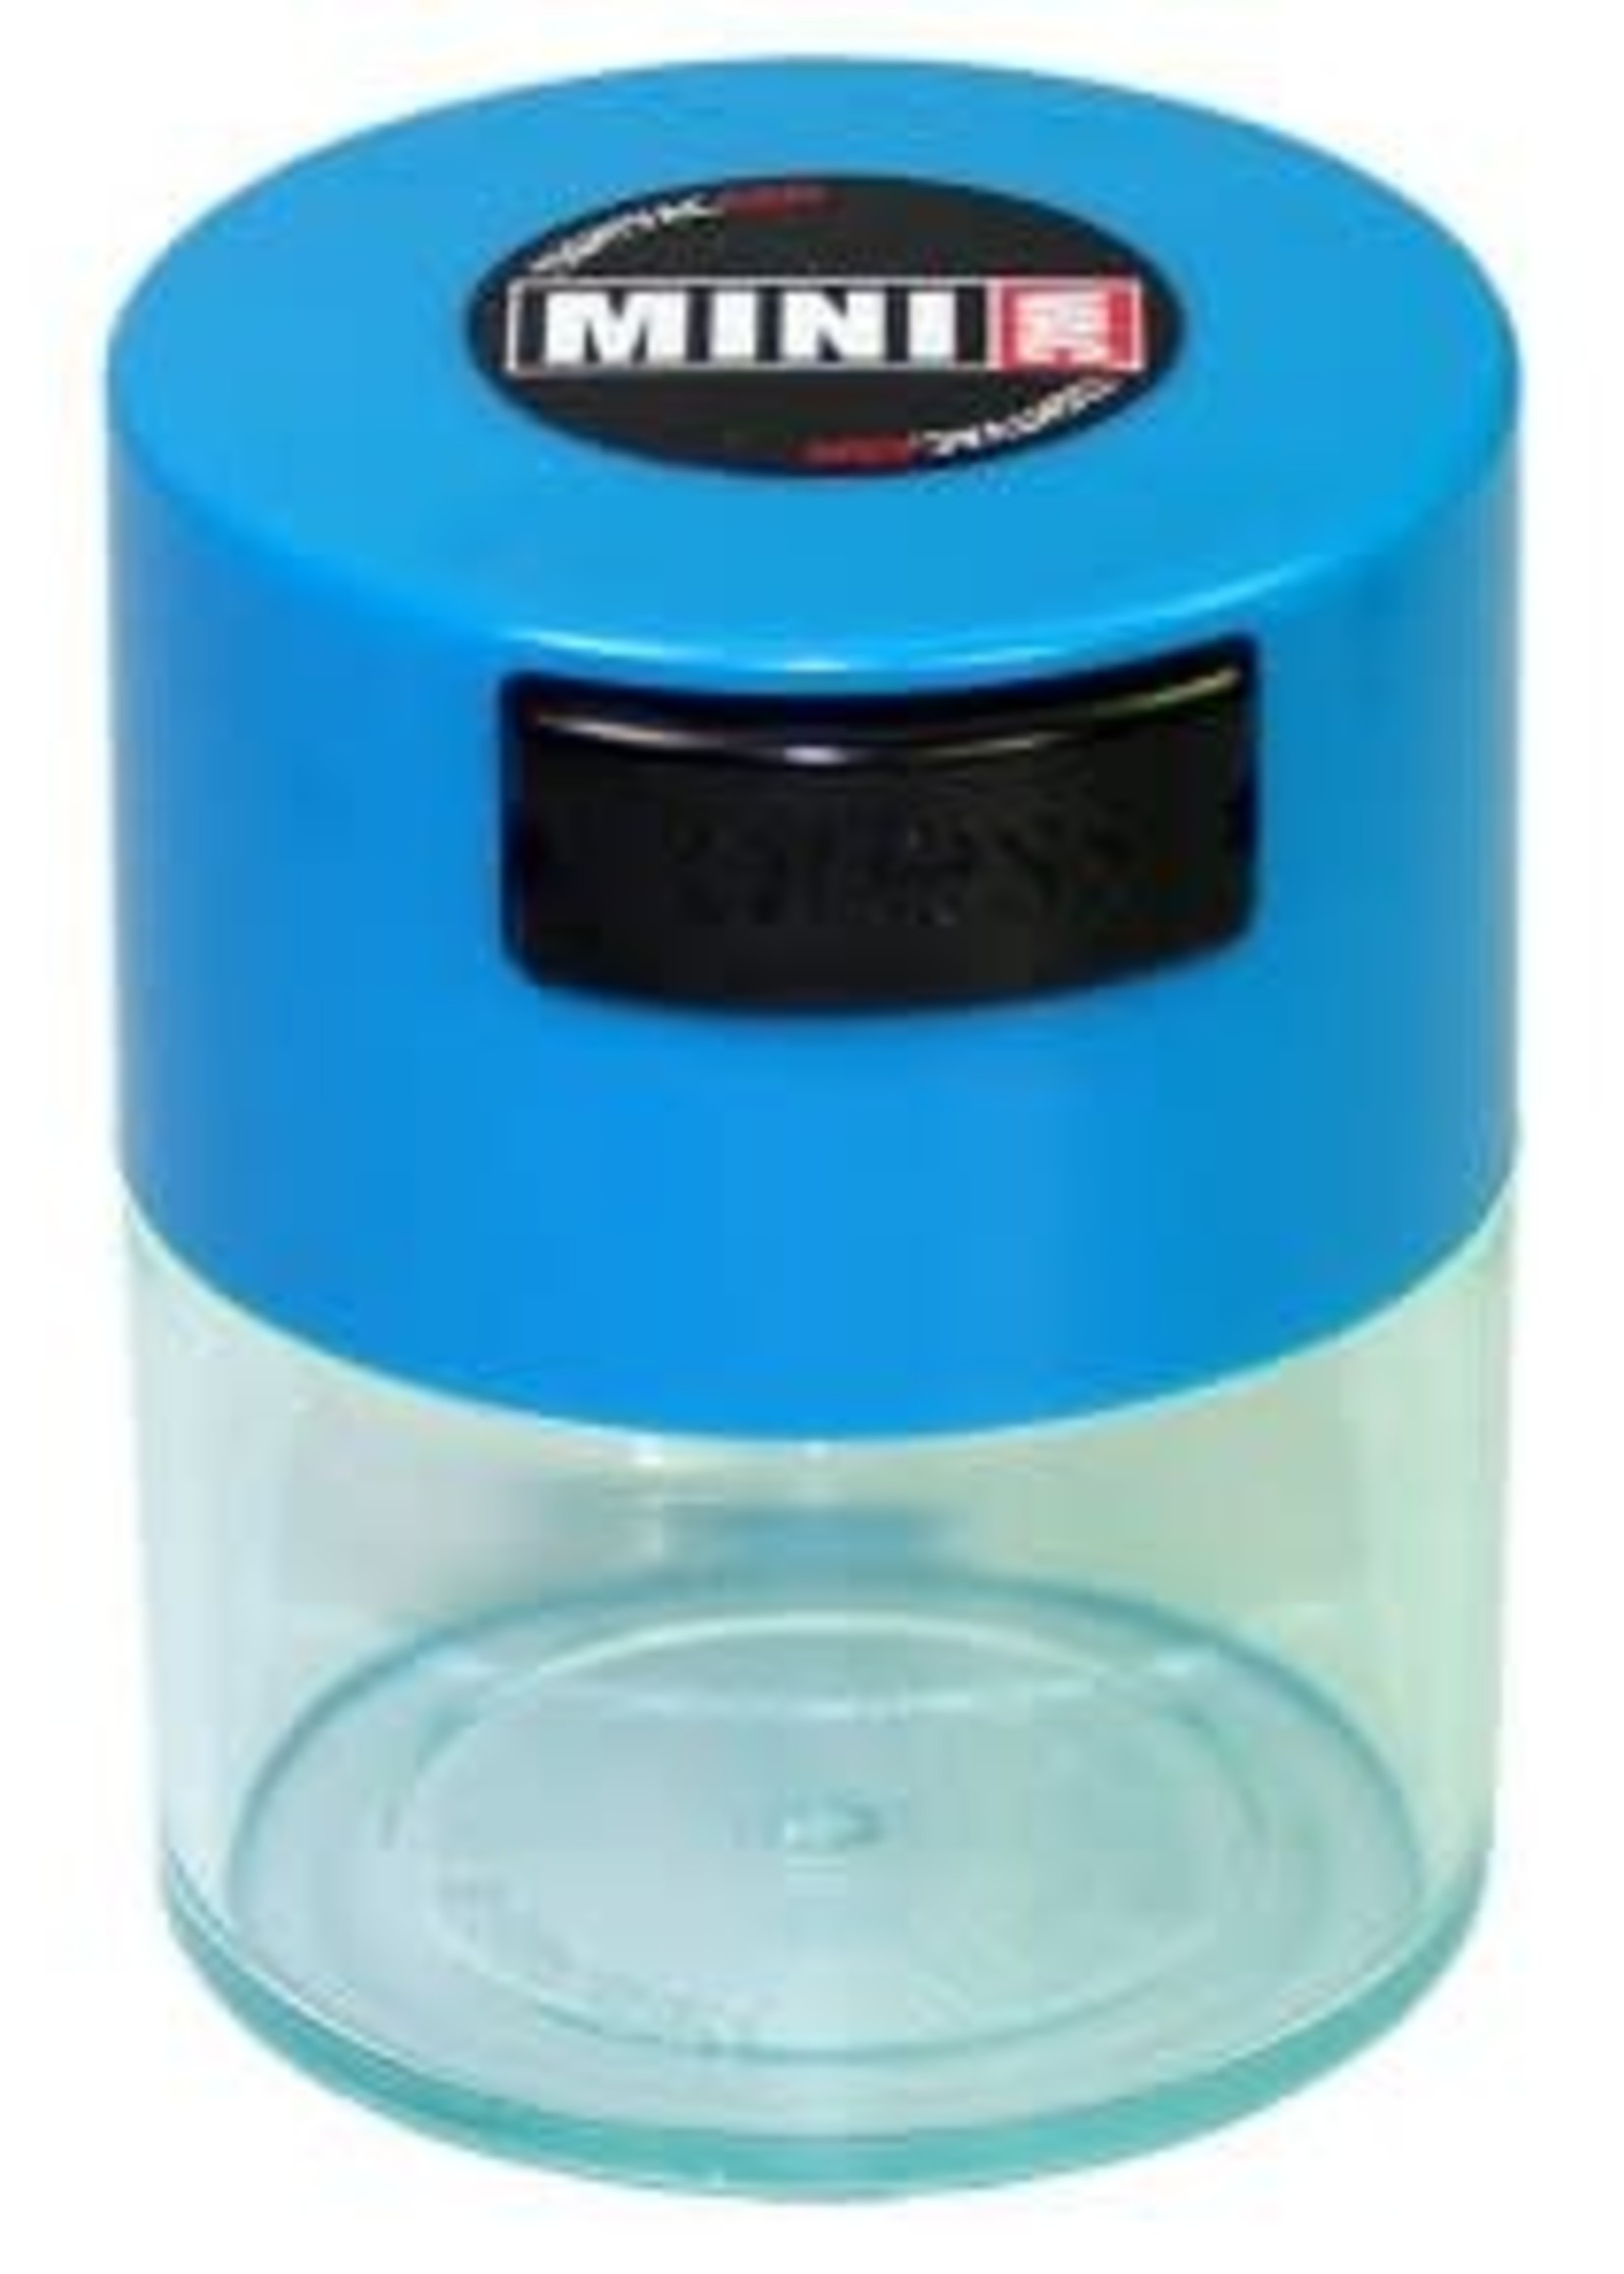 MiniVac 0.12 liter Blue Cap/Clear Body